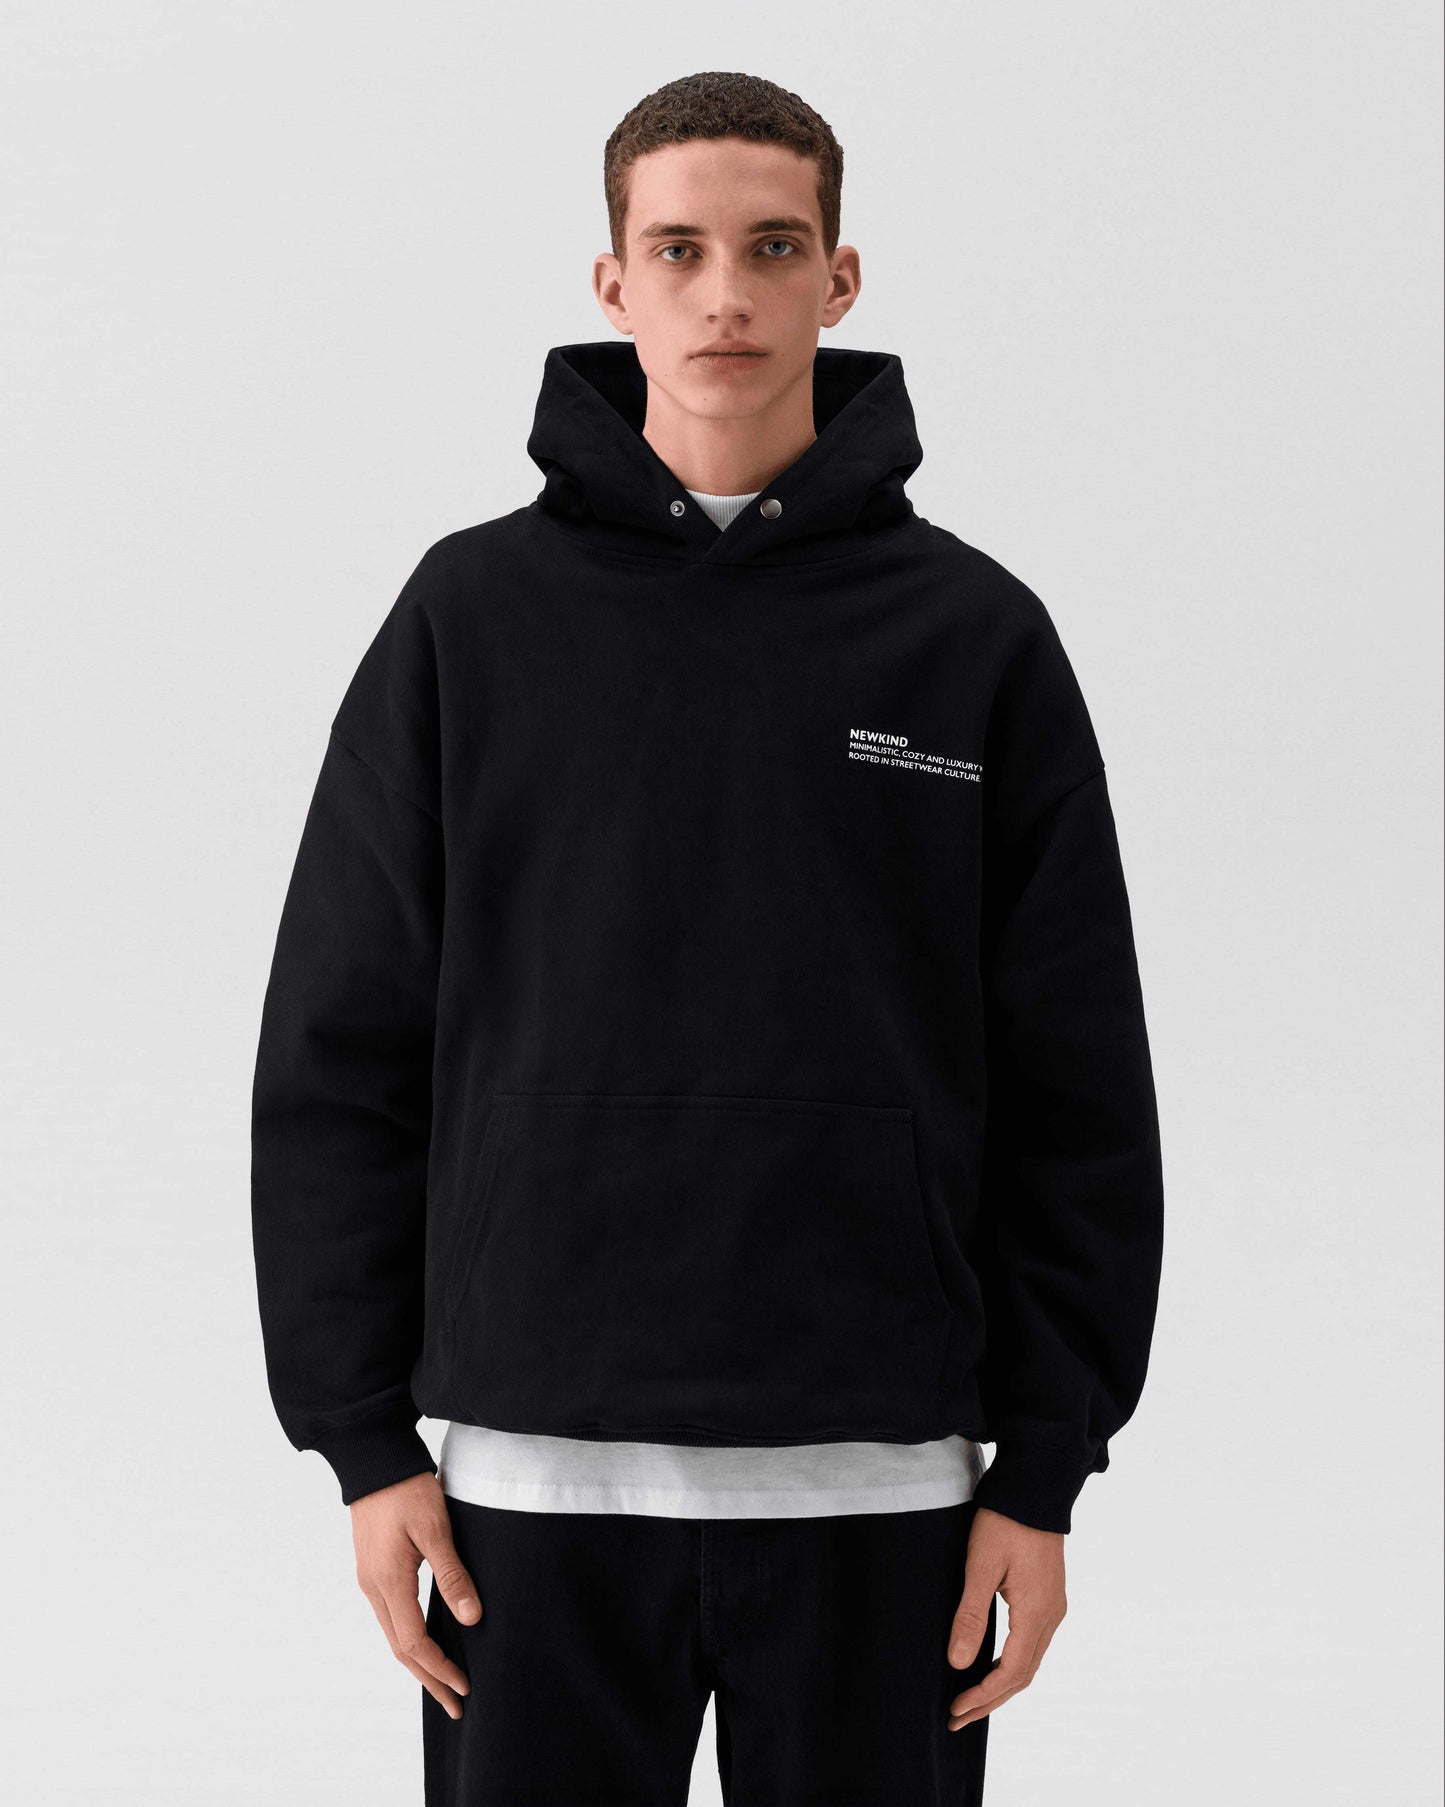 NEWKIND / Black hoodie, essential hoodie, hoodie, hoodies, hoodie for men, men's hoodie, graphic hoodies